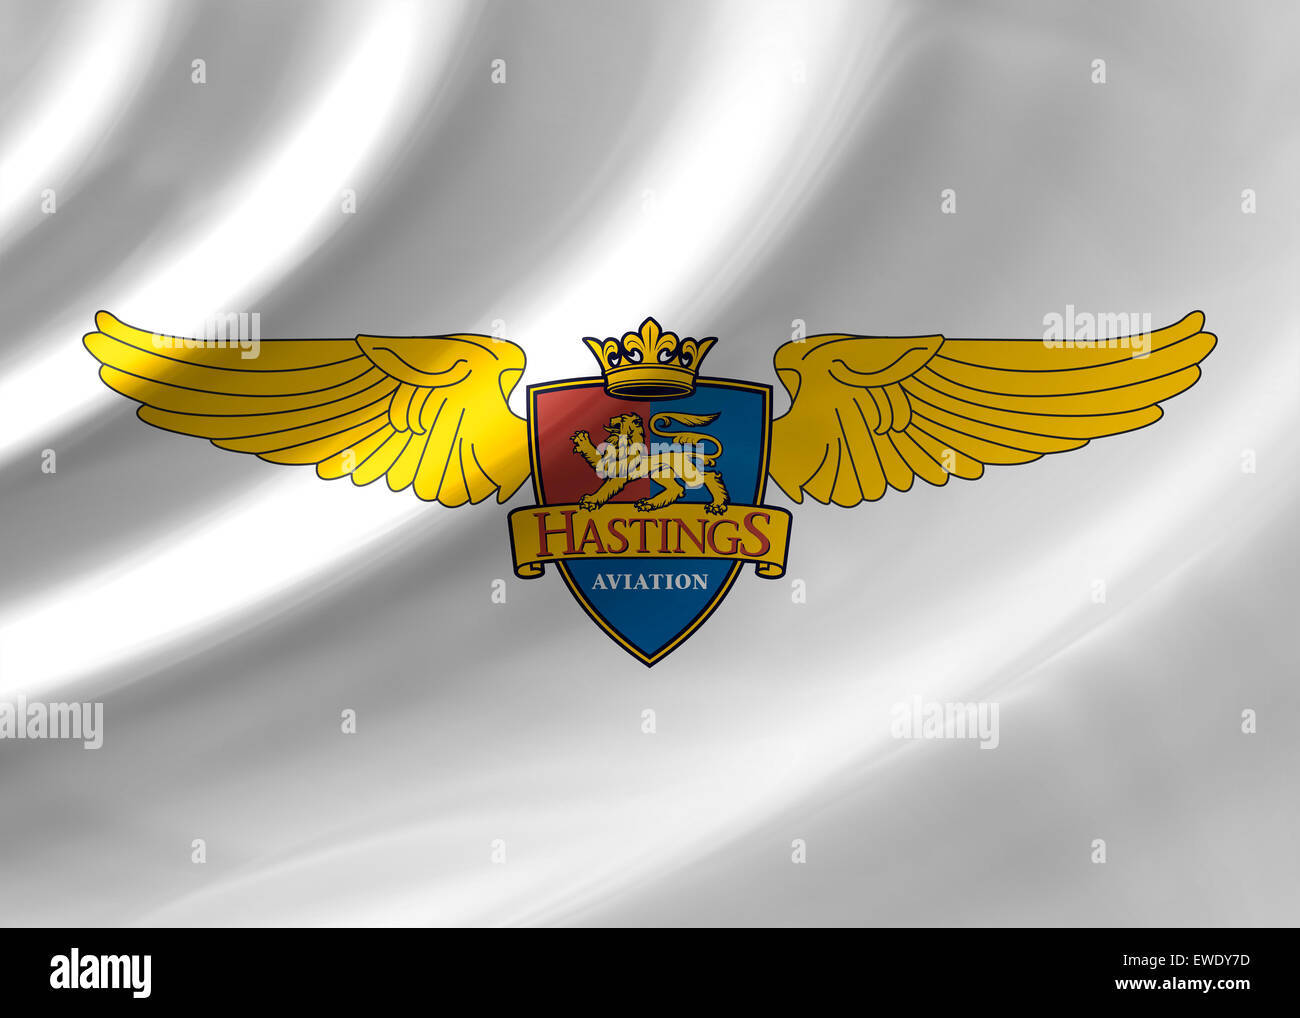 Aviación hastings logotipo ícono distintivo emblema símbolo firmar Foto de stock